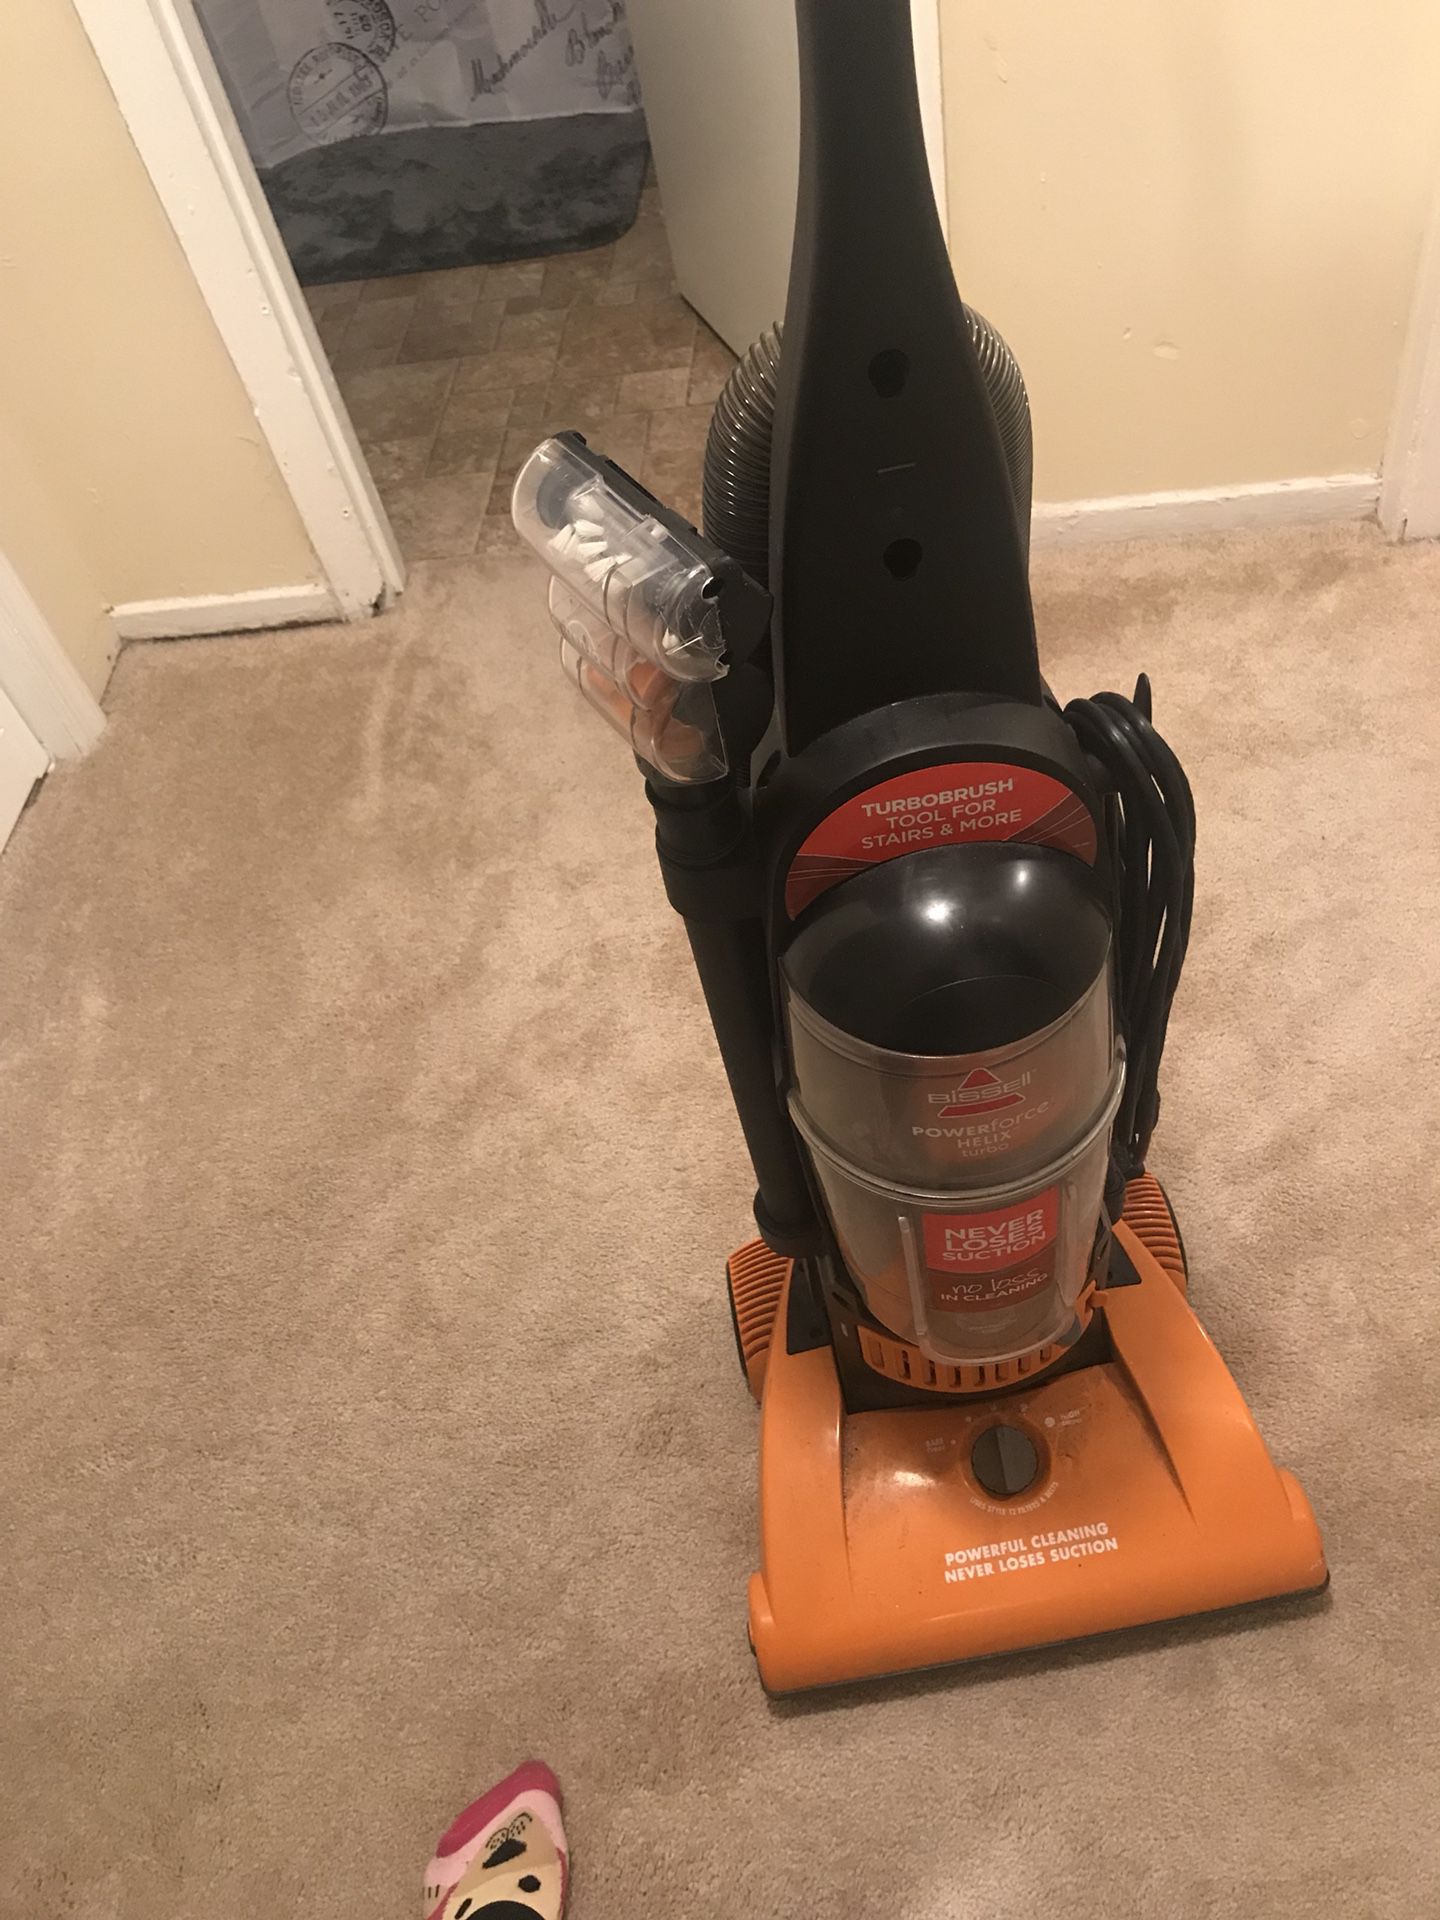 Bissell vacuum